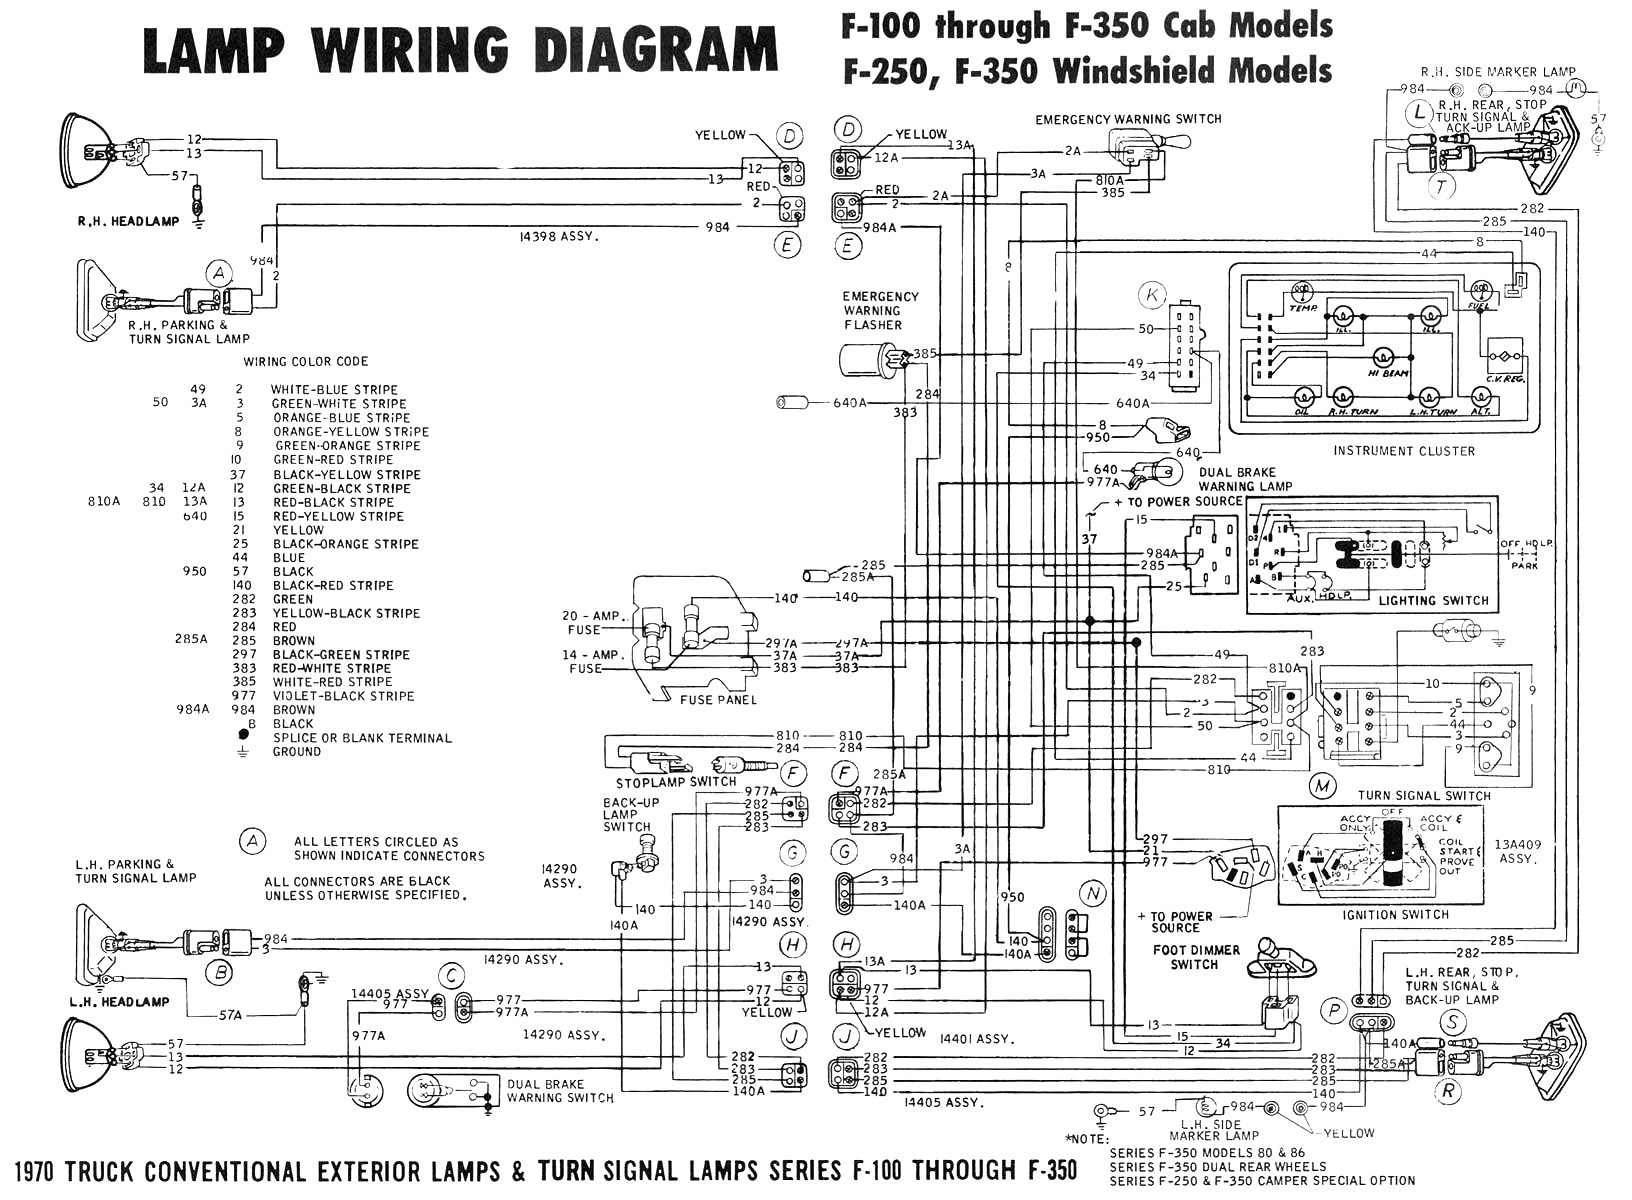 92 f450 wiring diagram wiring diagram note 92 f450 wiring diagram